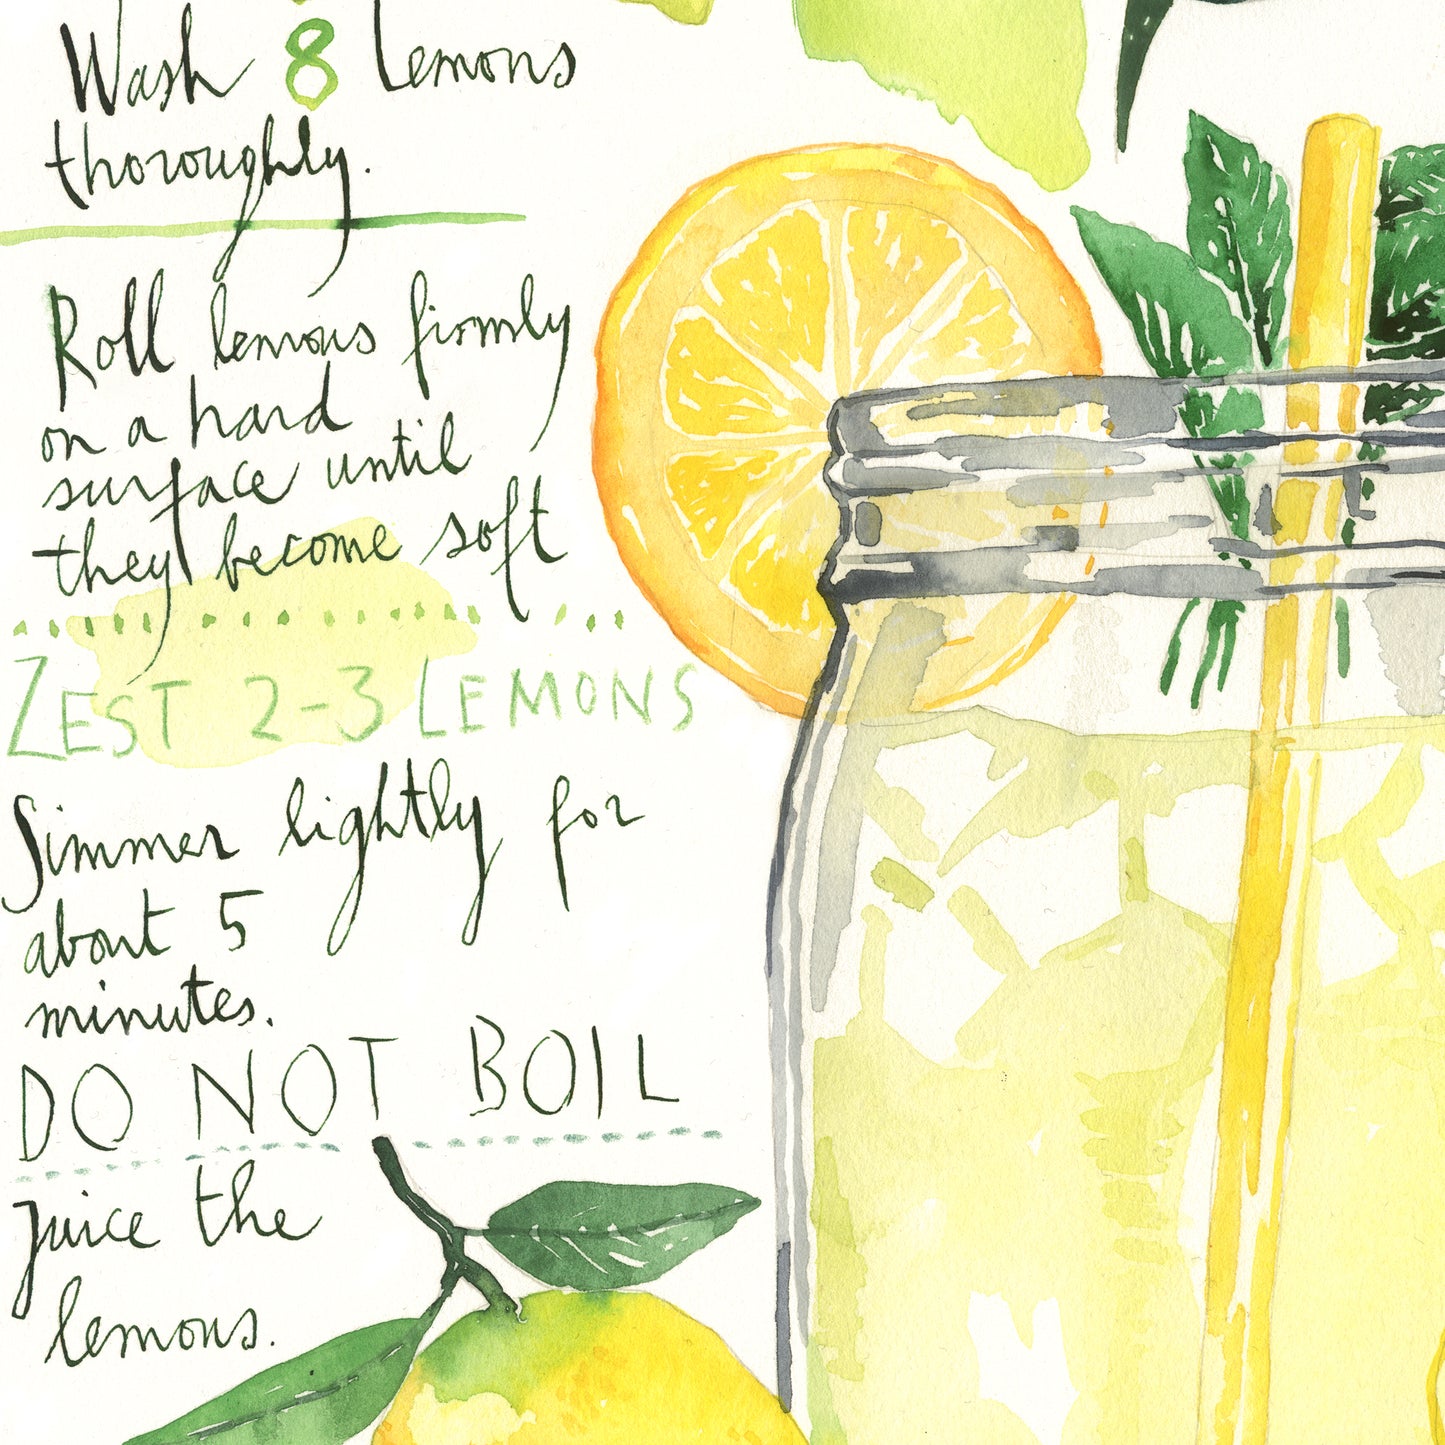 Homemade lemonade recipe